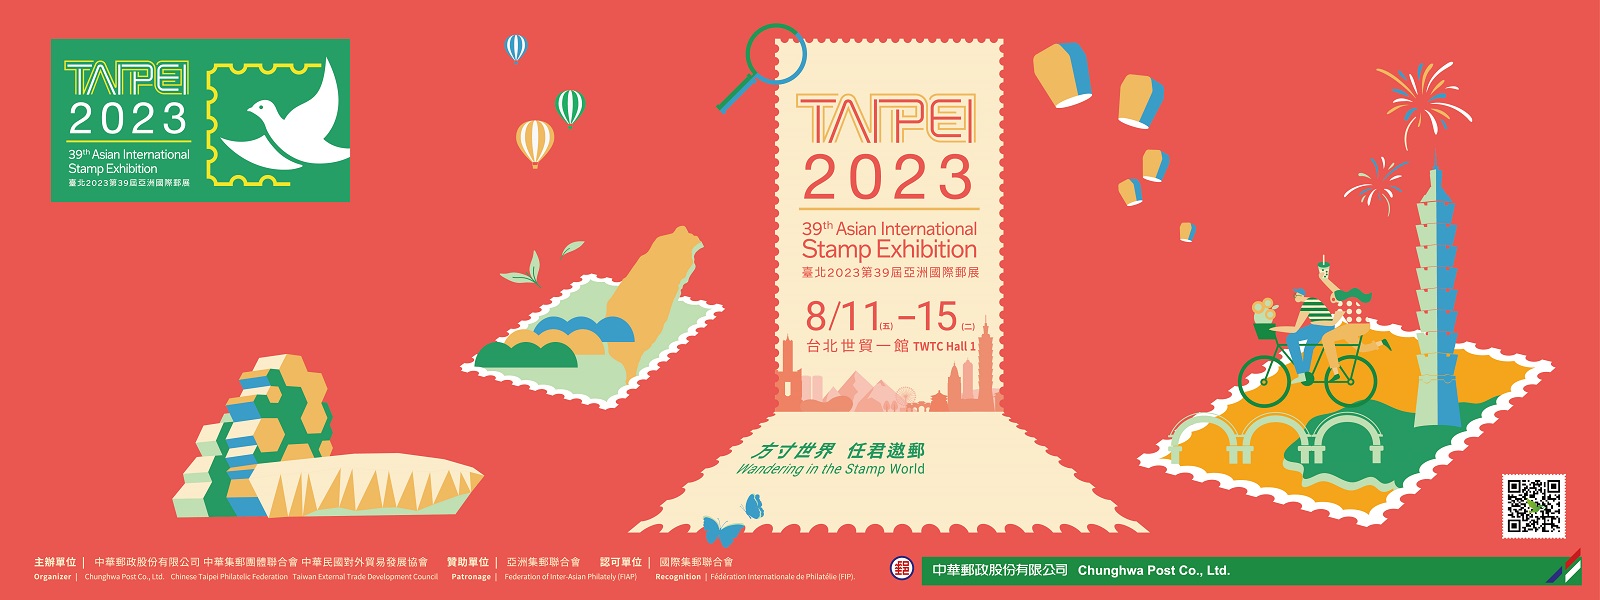 廣告連結:臺北2023亞洲國際郵展